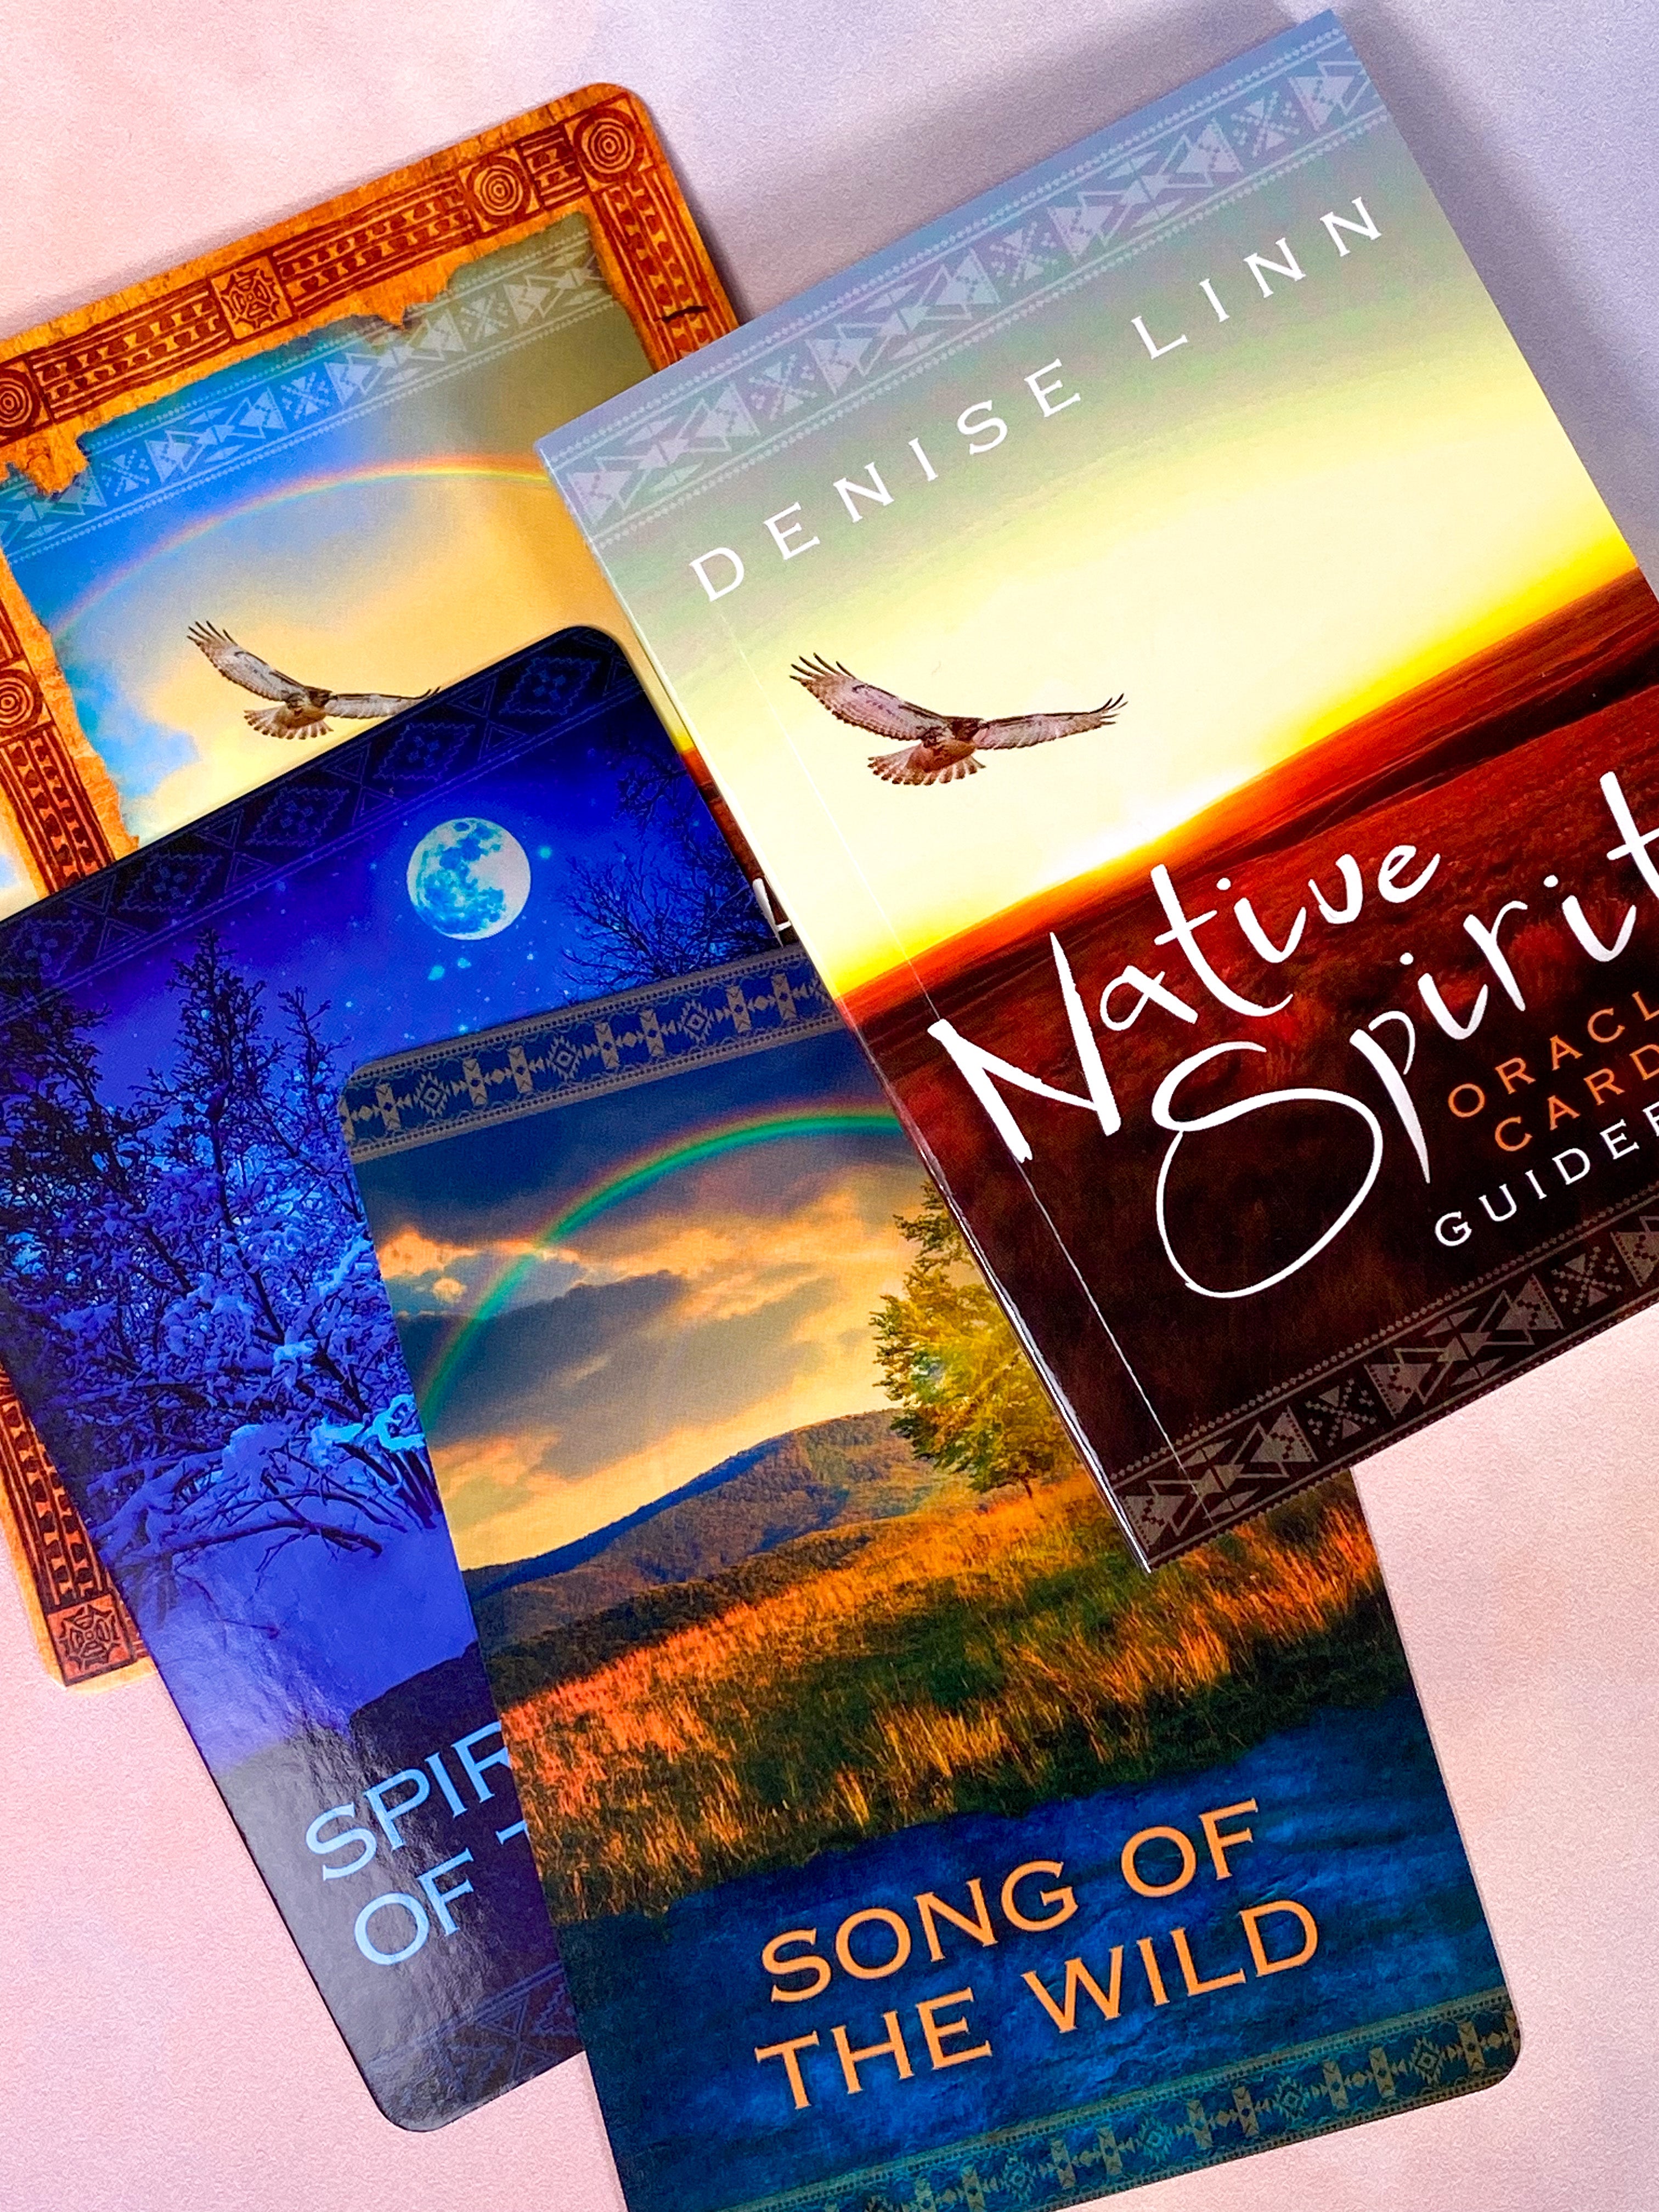 The Healing Mantra Oracle Card av Matt Kahn